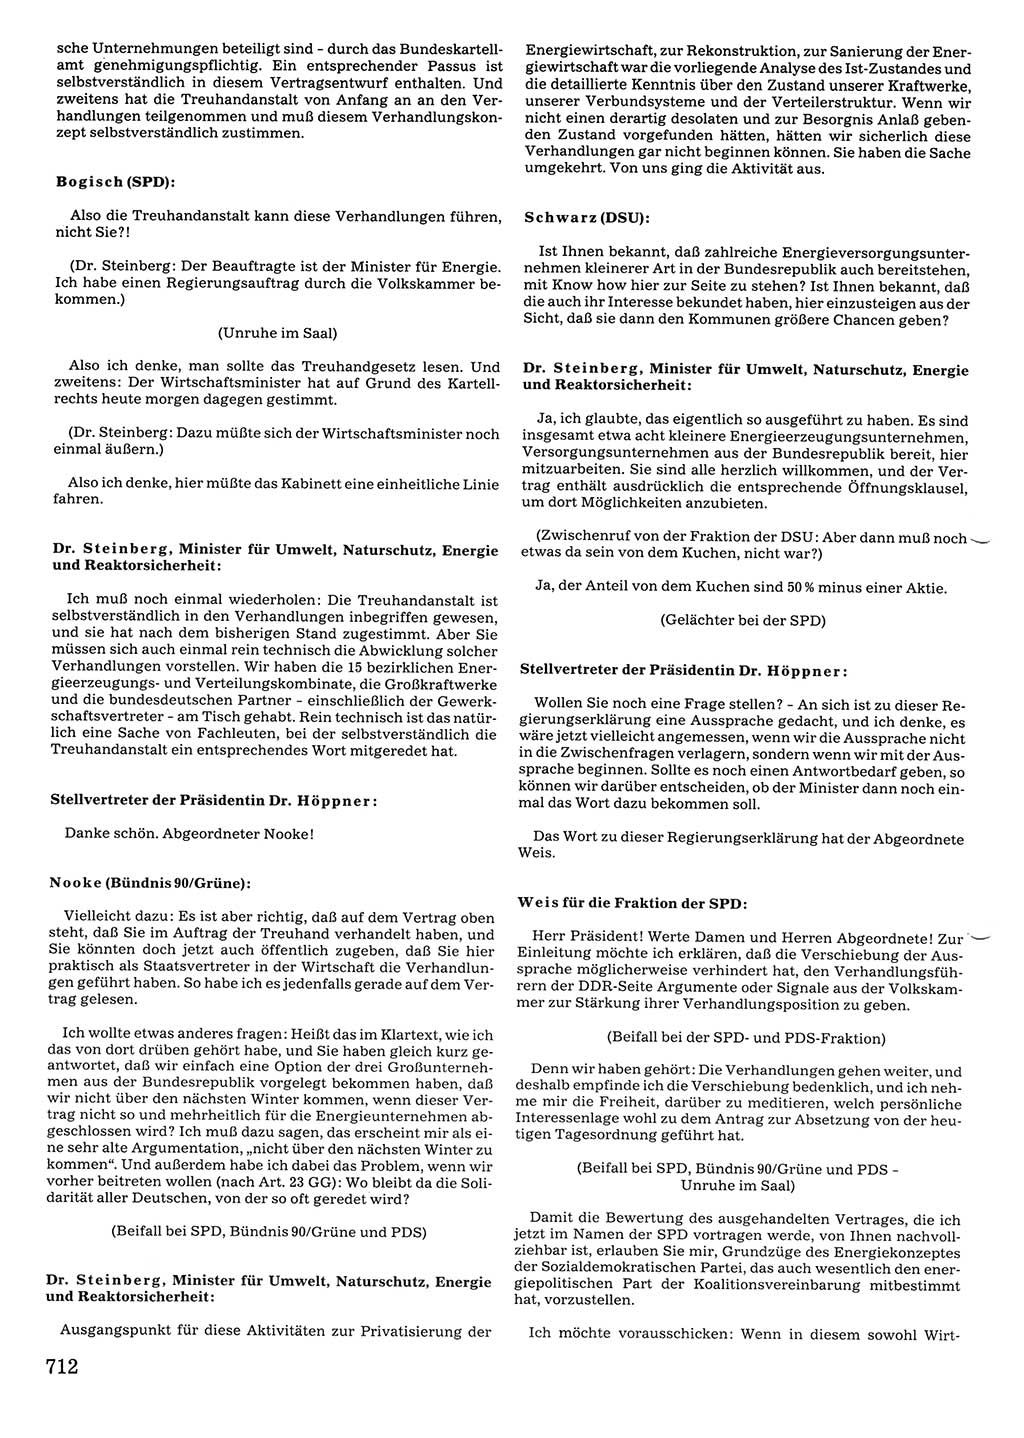 Tagungen der Volkskammer (VK) der Deutschen Demokratischen Republik (DDR), 10. Wahlperiode 1990, Seite 712 (VK. DDR 10. WP. 1990, Prot. Tg. 1-38, 5.4.-2.10.1990, S. 712)